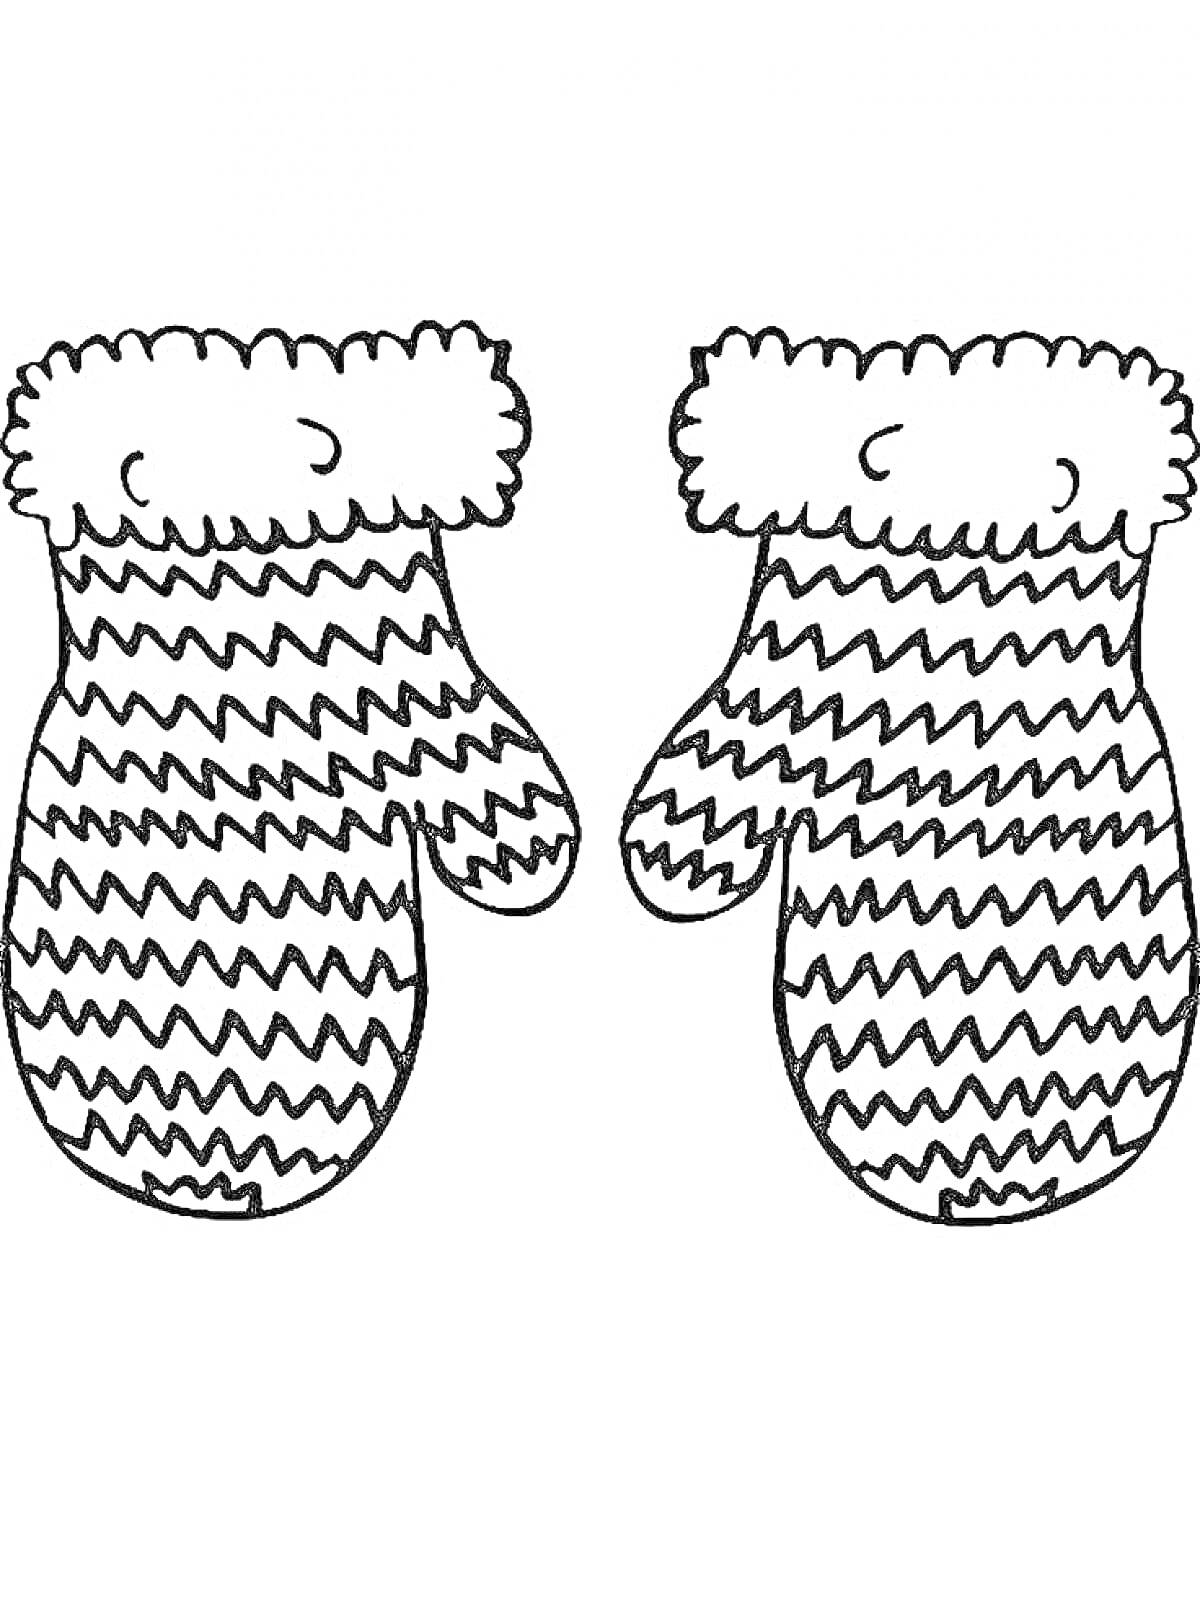 Детские рукавички с волнистыми узорами и меховыми манжетами